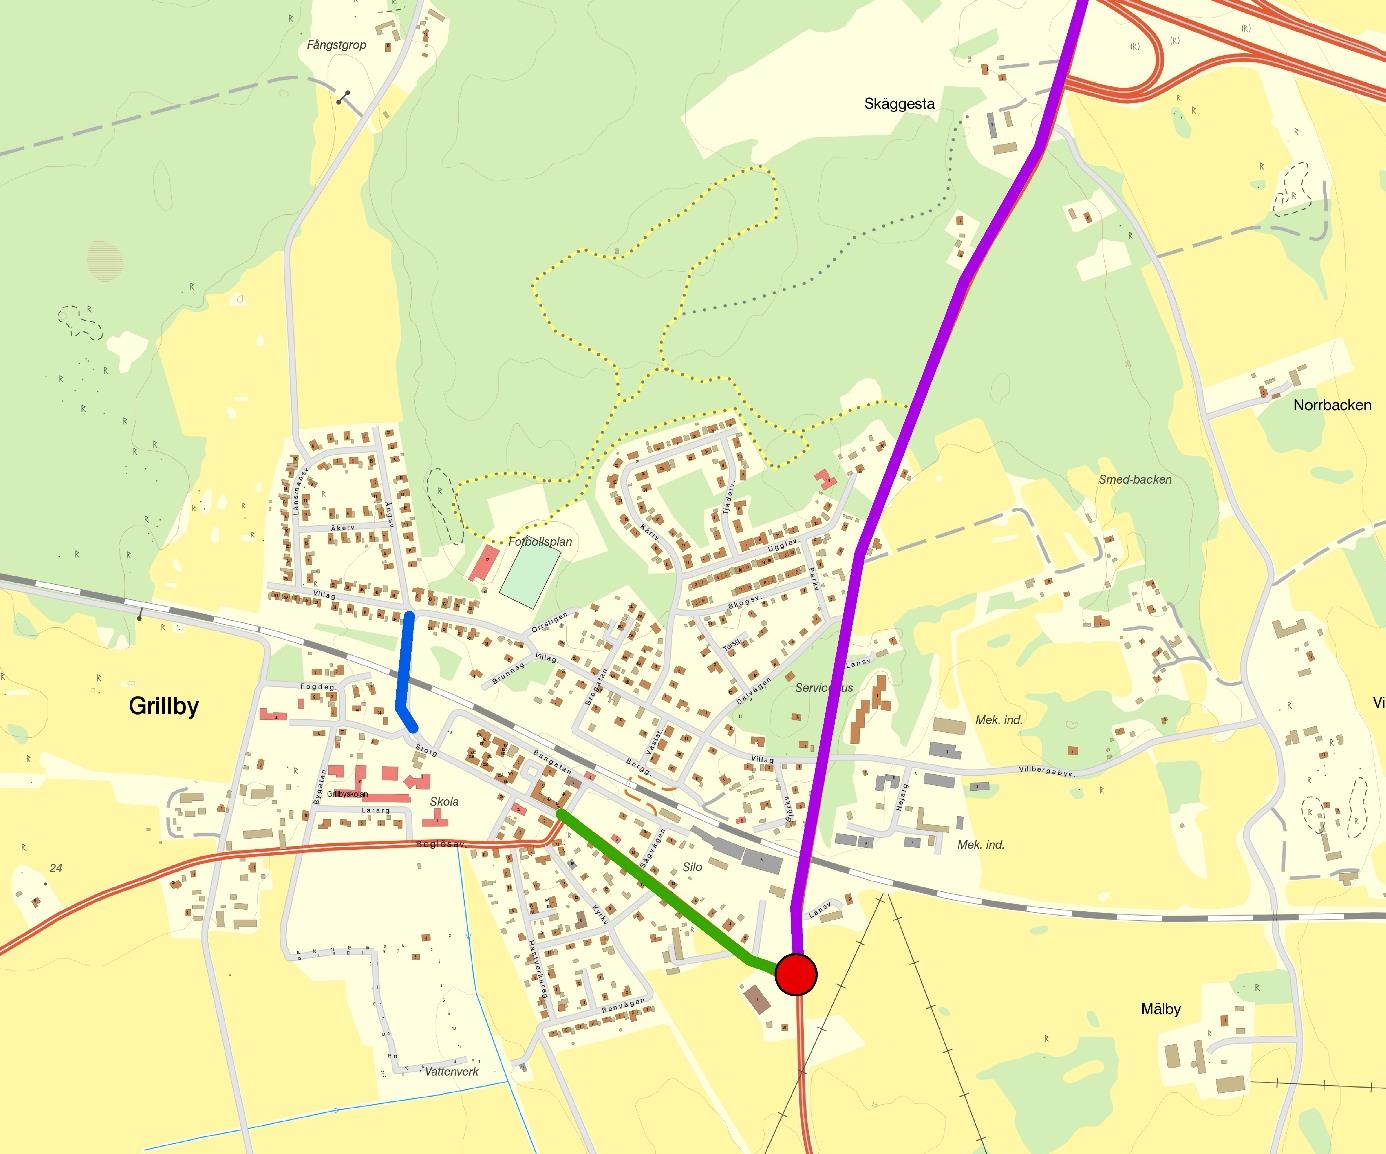 10 Angående brister i vägnätet lyftes behovet av cykelvägar, framför allt mellan Grillby och Skolsta och till avfarten vid E18 men även till Trögden.